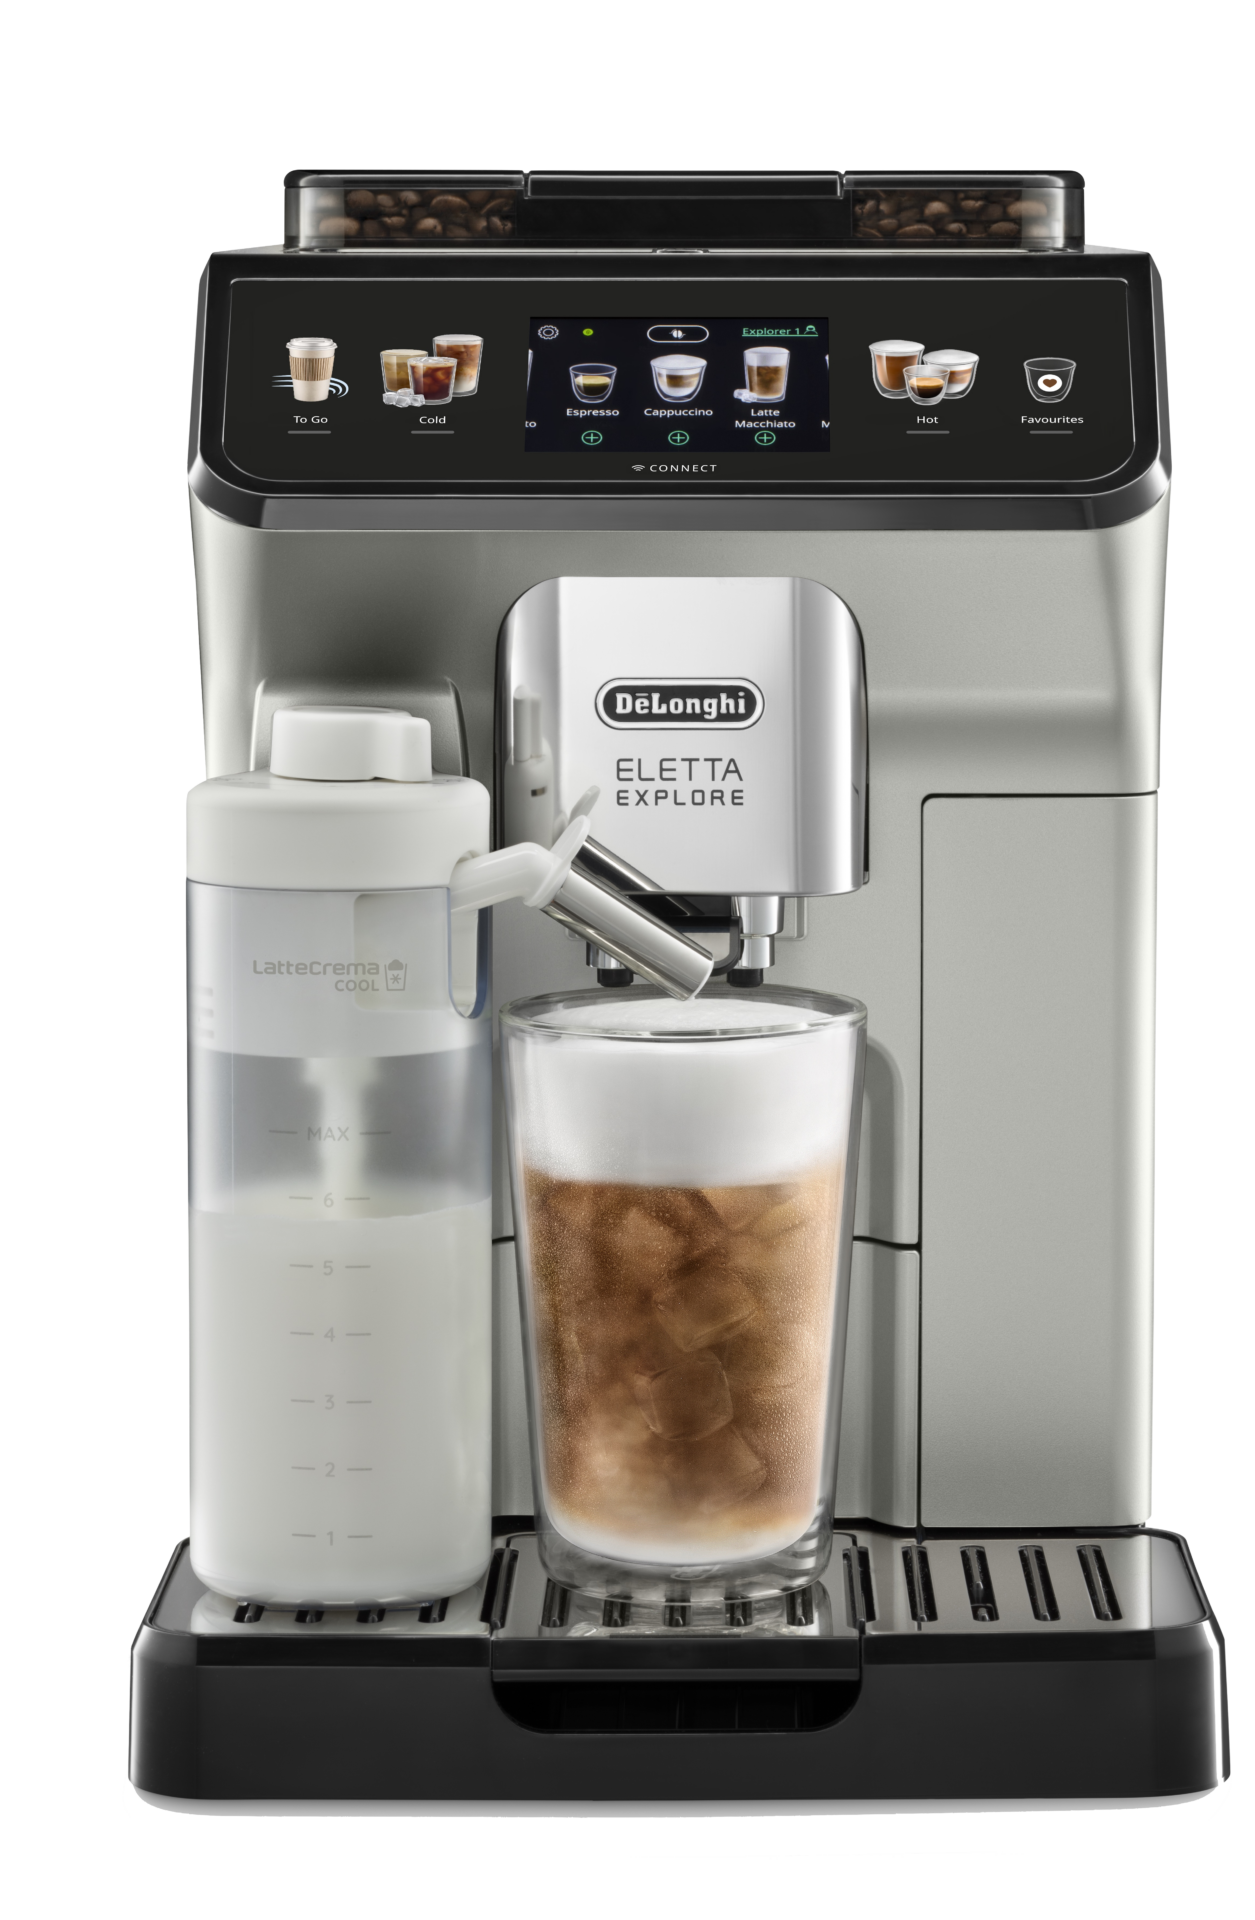 ECAM450.65.S fronte fondo bianco cold brew EUR1049 Brad Pitt's favoriete kopje koffie maak je gemakkelijk zelf thuis met de Eletta Explore van De'Longhi